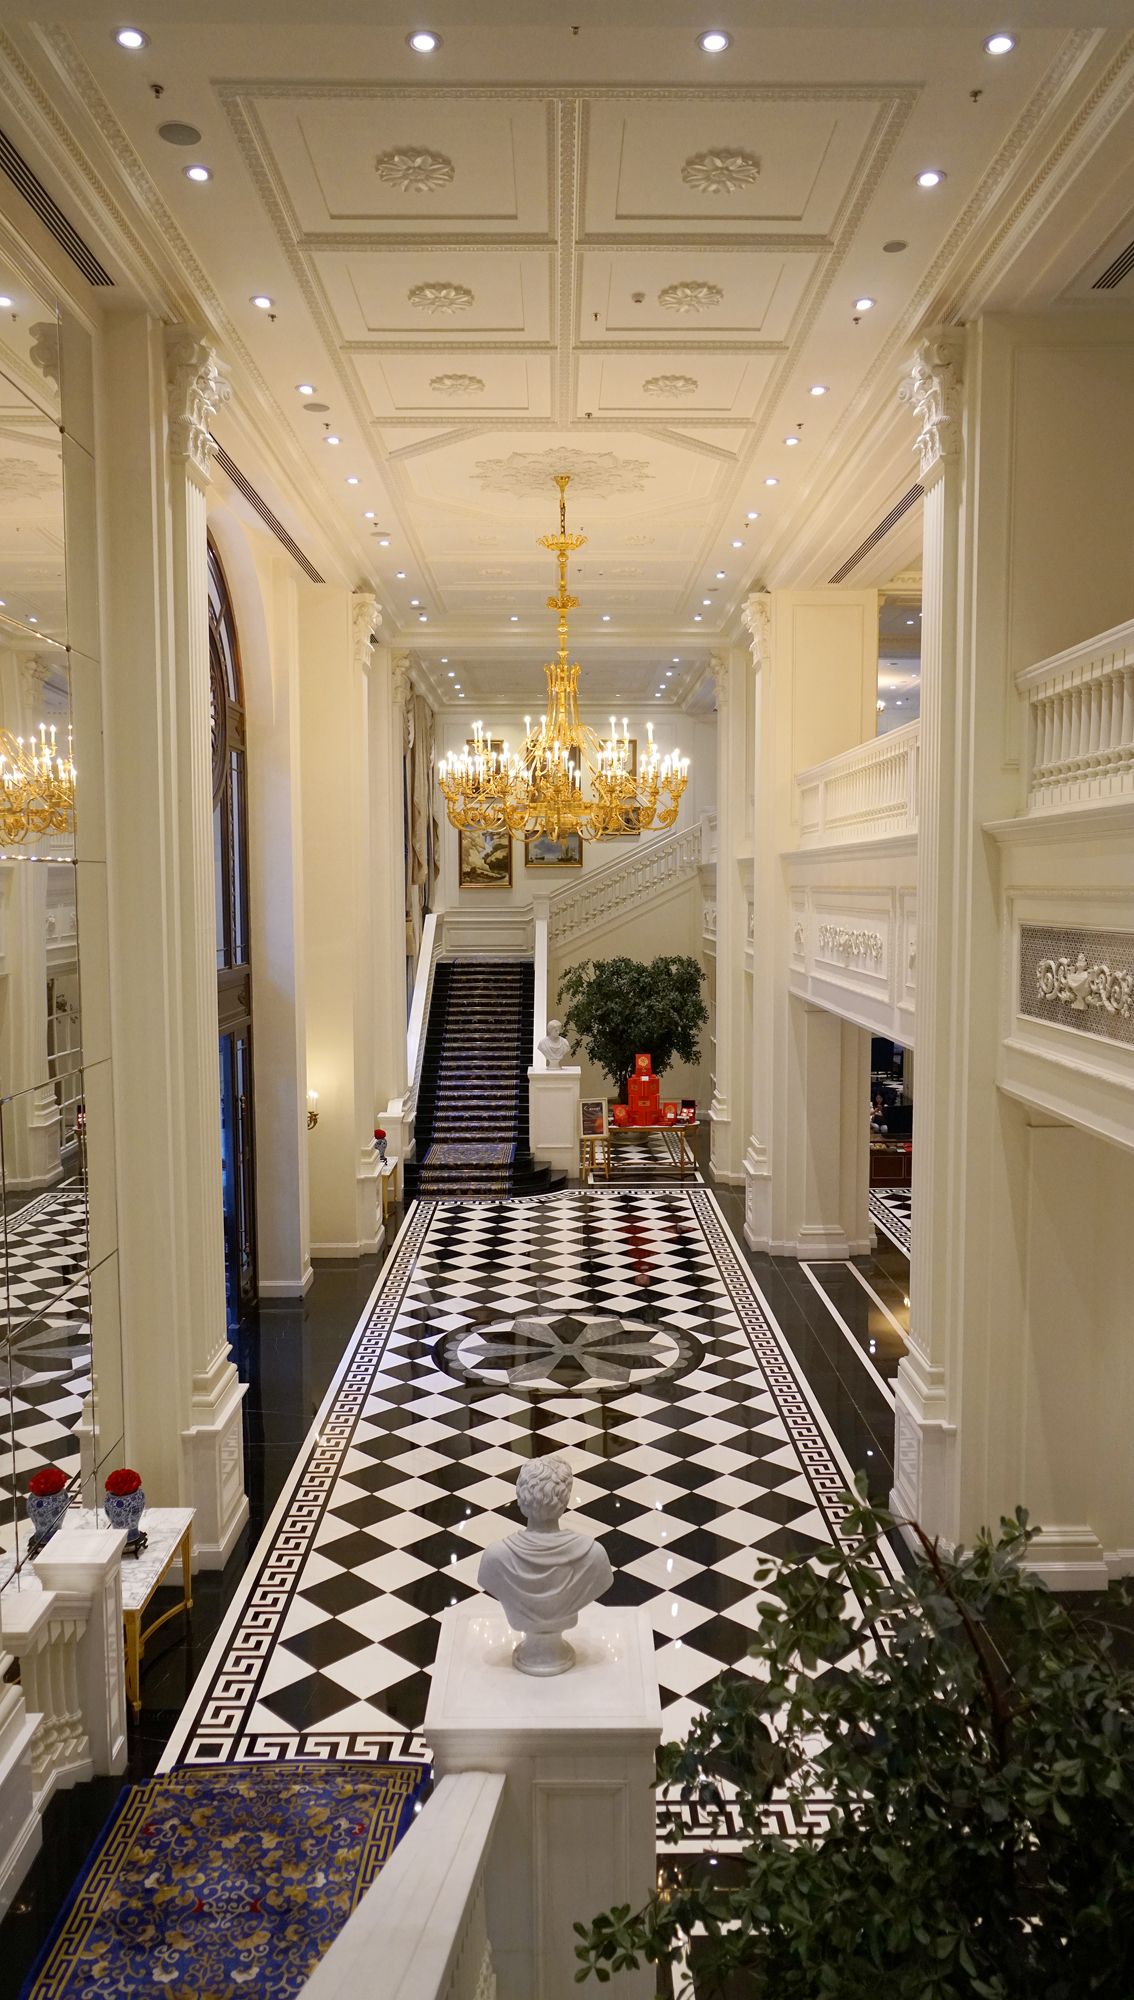 2021扬帆起航#城堡酒店巡礼:最雍容华贵的,天津丽思卡尔顿酒店套房